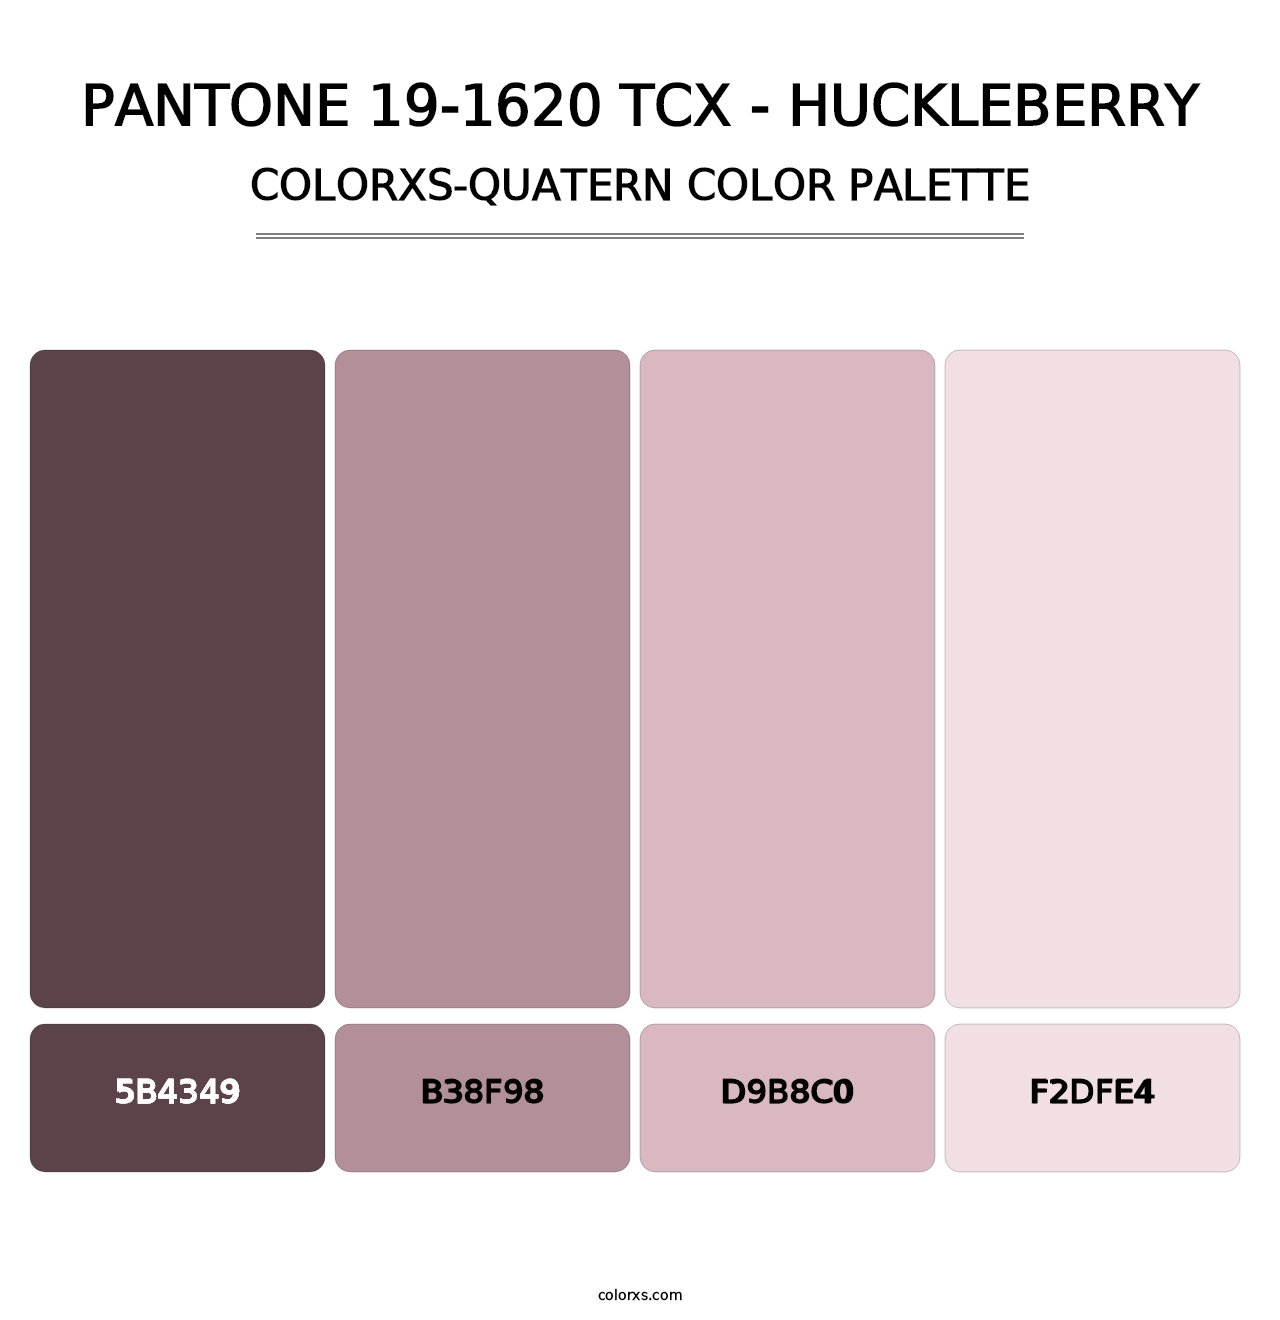 PANTONE 19-1620 TCX - Huckleberry - Colorxs Quatern Palette